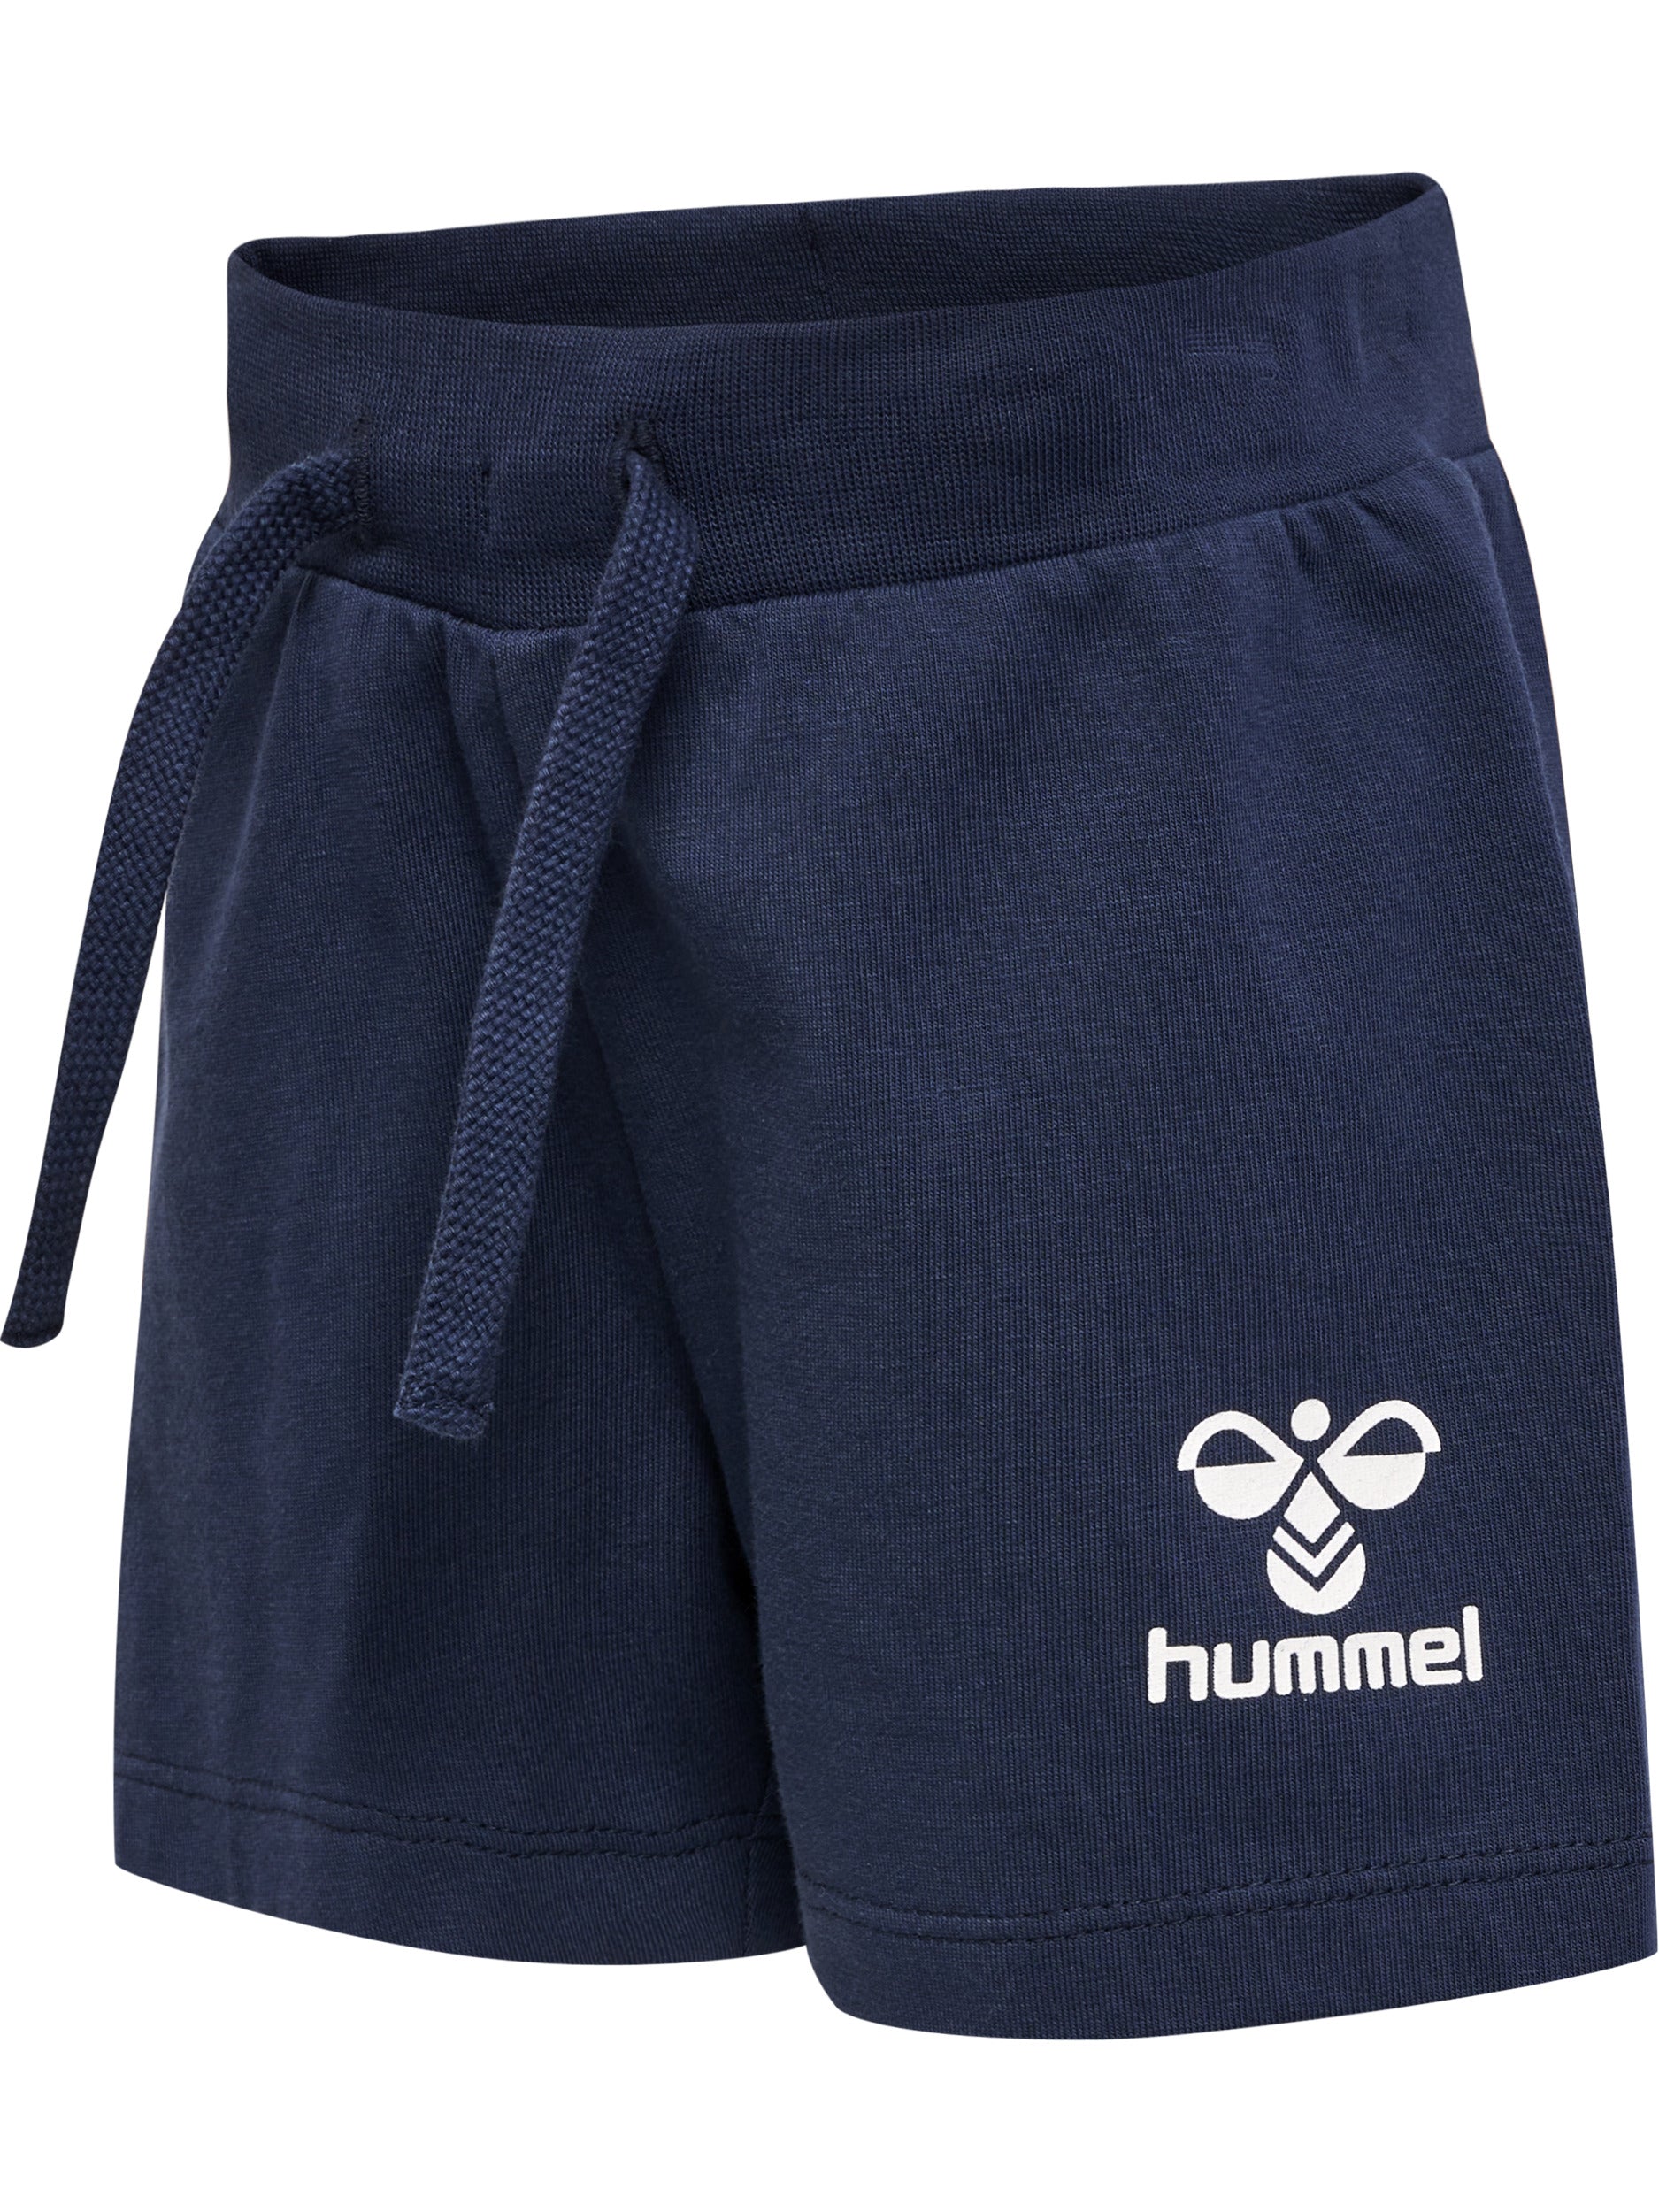 Se Hummel Shorts Joc - Hummel - Shorts - GladeRollinger.dk hos Glade Rollinger